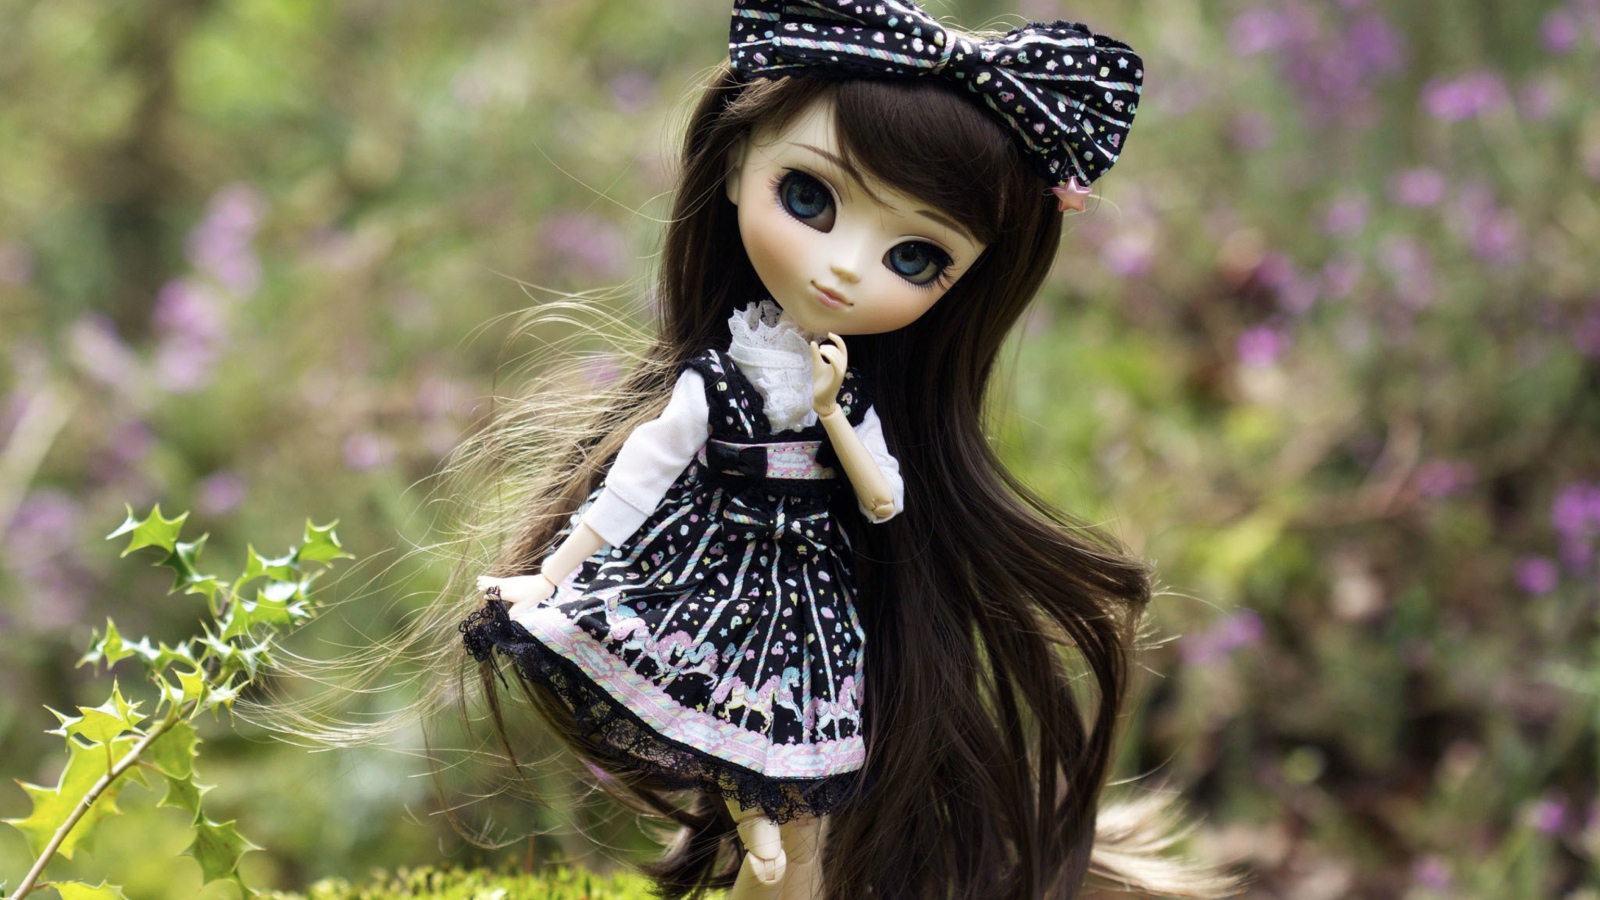 Das Cute Doll With Dark Hair And Black Bow Wallpaper 1600x900